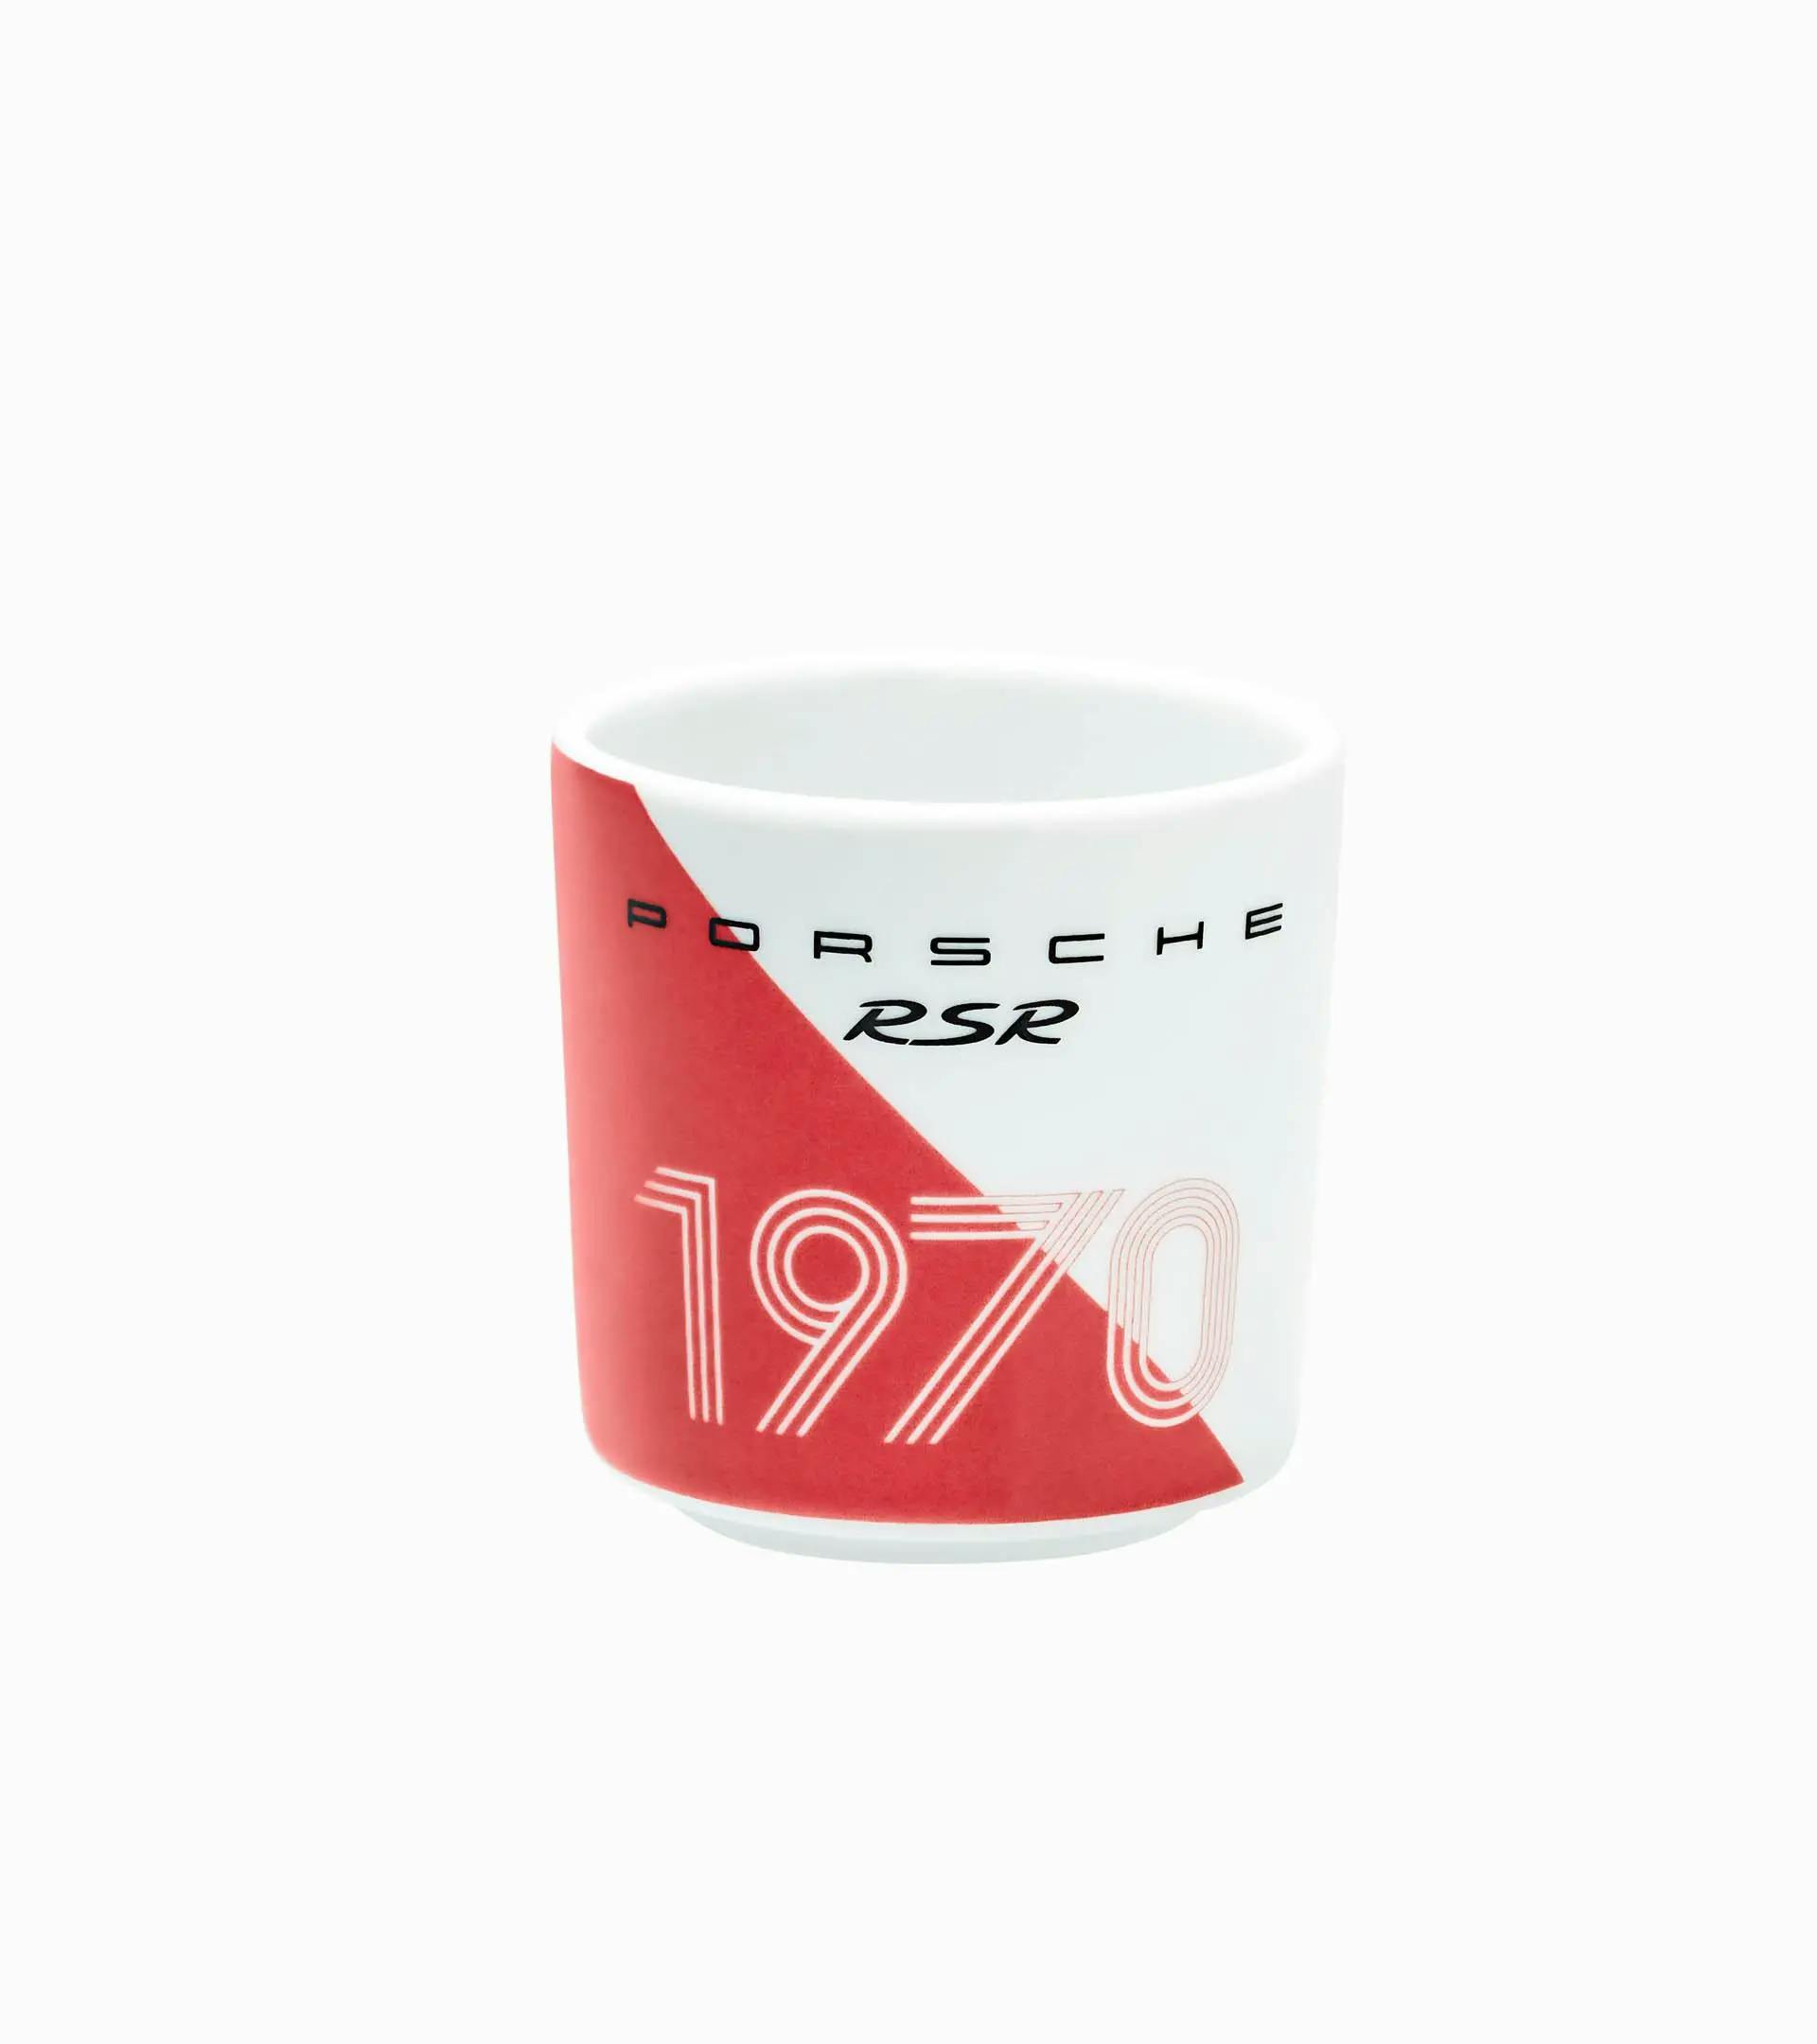 Sammel-Espresso-Cup No. 1 Le Mans 2020 – Ltd. 1